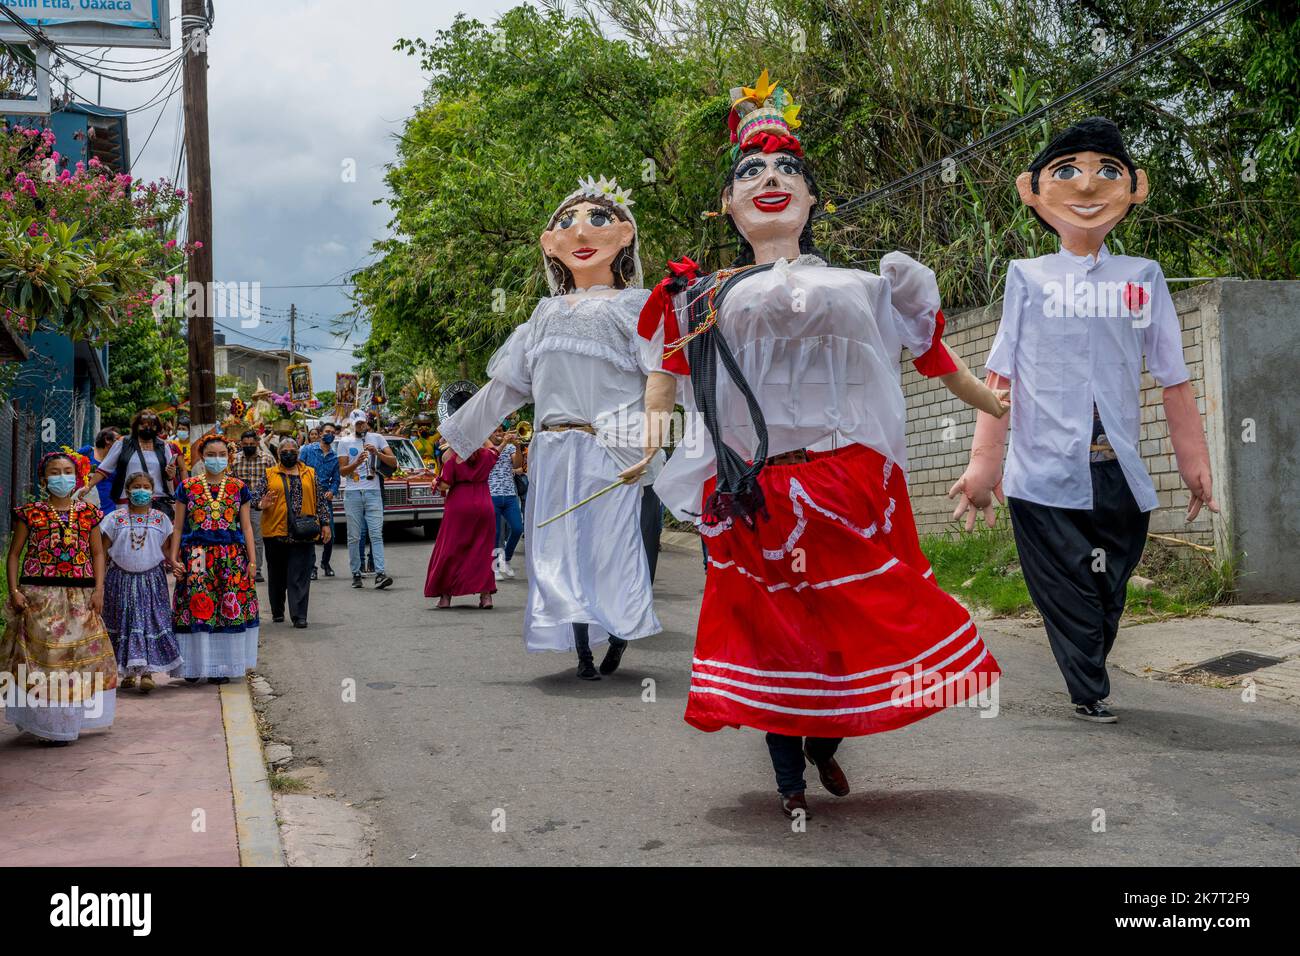 Una processione di nozze con Mojigangas (burattini giganti) nella strada della piccola città di San Agustin Etla vicino a Oaxaca, Messico. Foto Stock